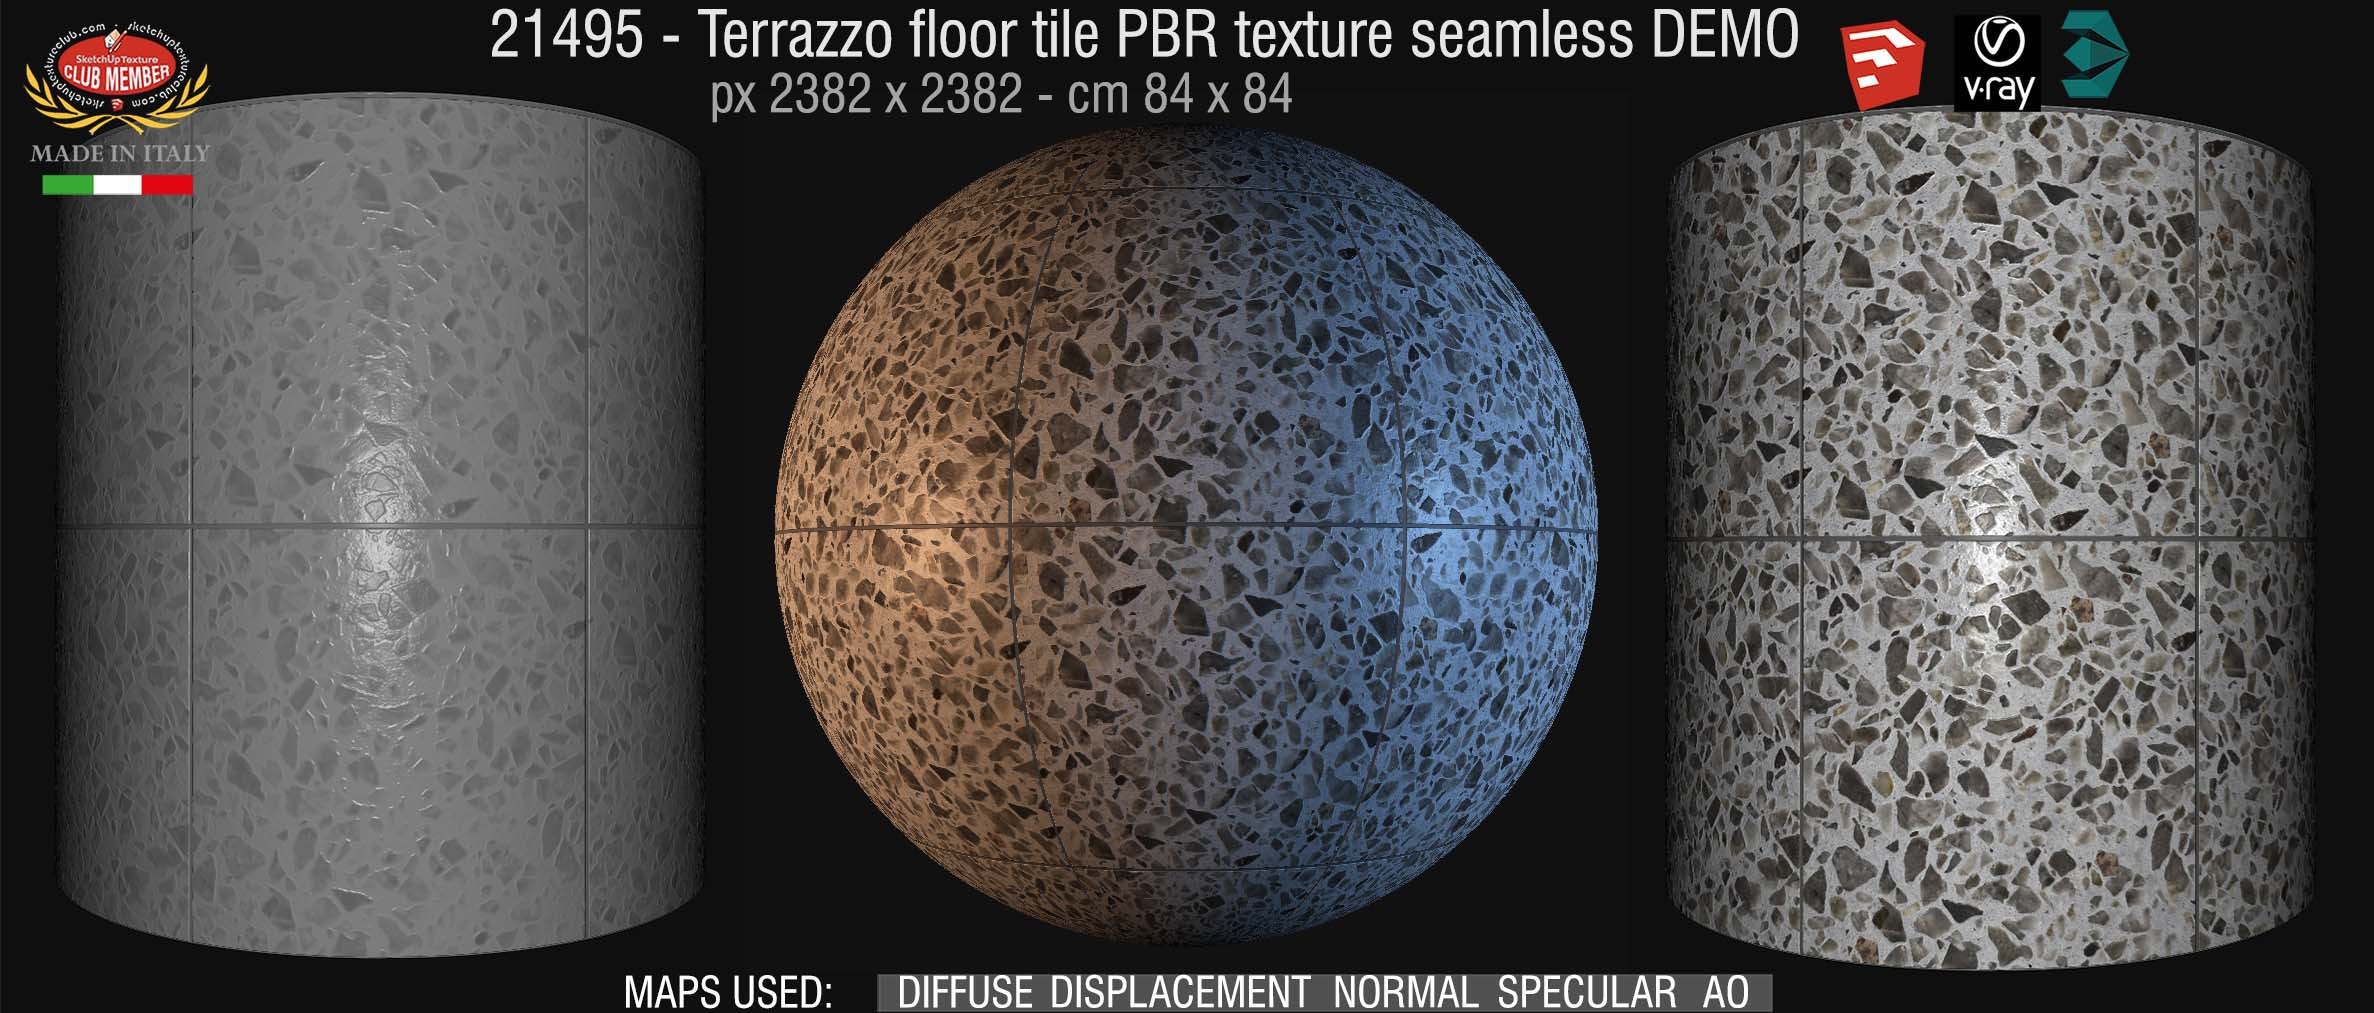 21495 terrazzo floor tile PBR texture seamless DEMO